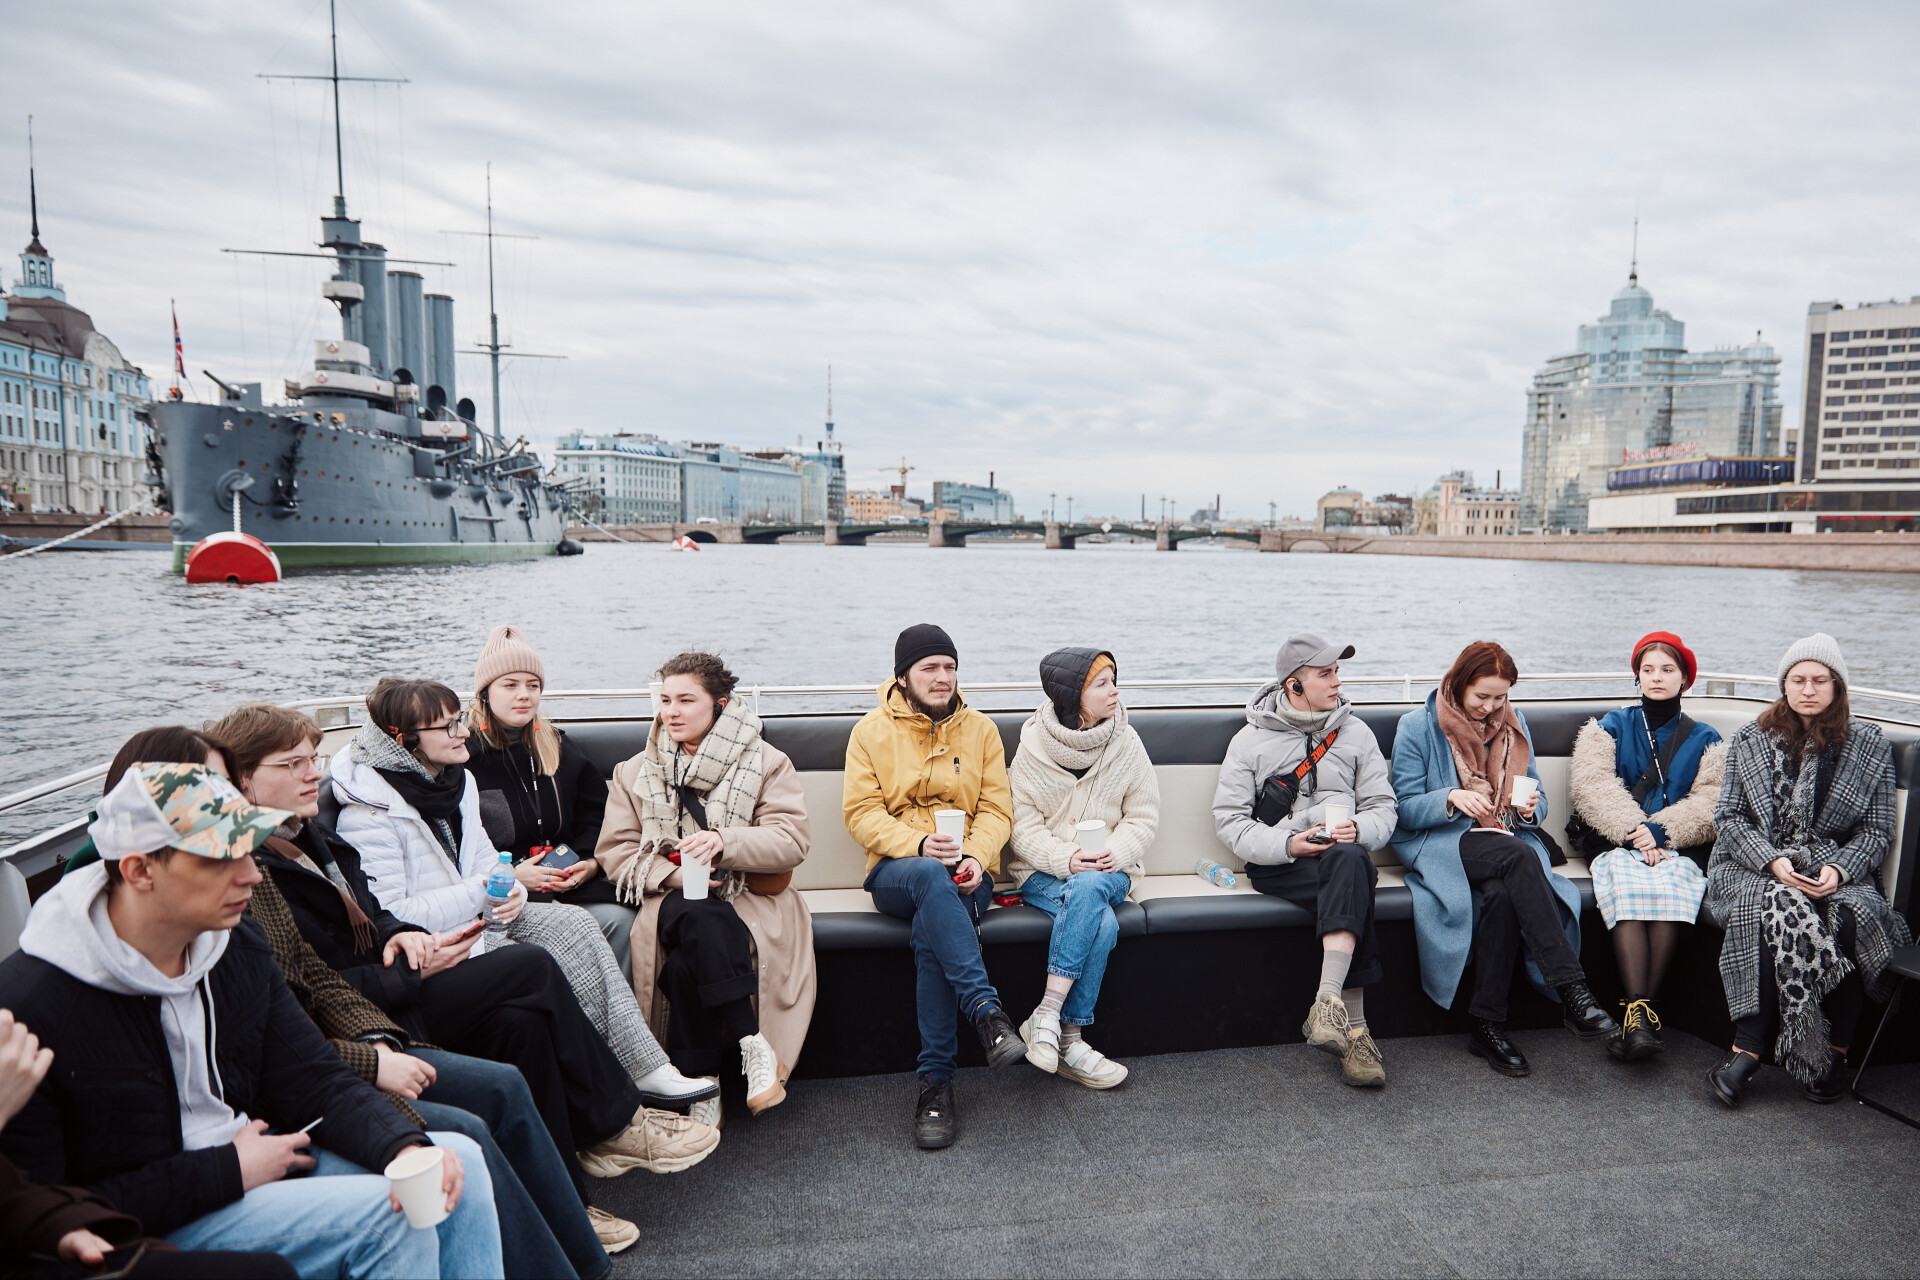 Культурно-исследовательский проект "От города к миру" создаст новое "великое посольство" для урбанистов и архитекторов в Петербурге